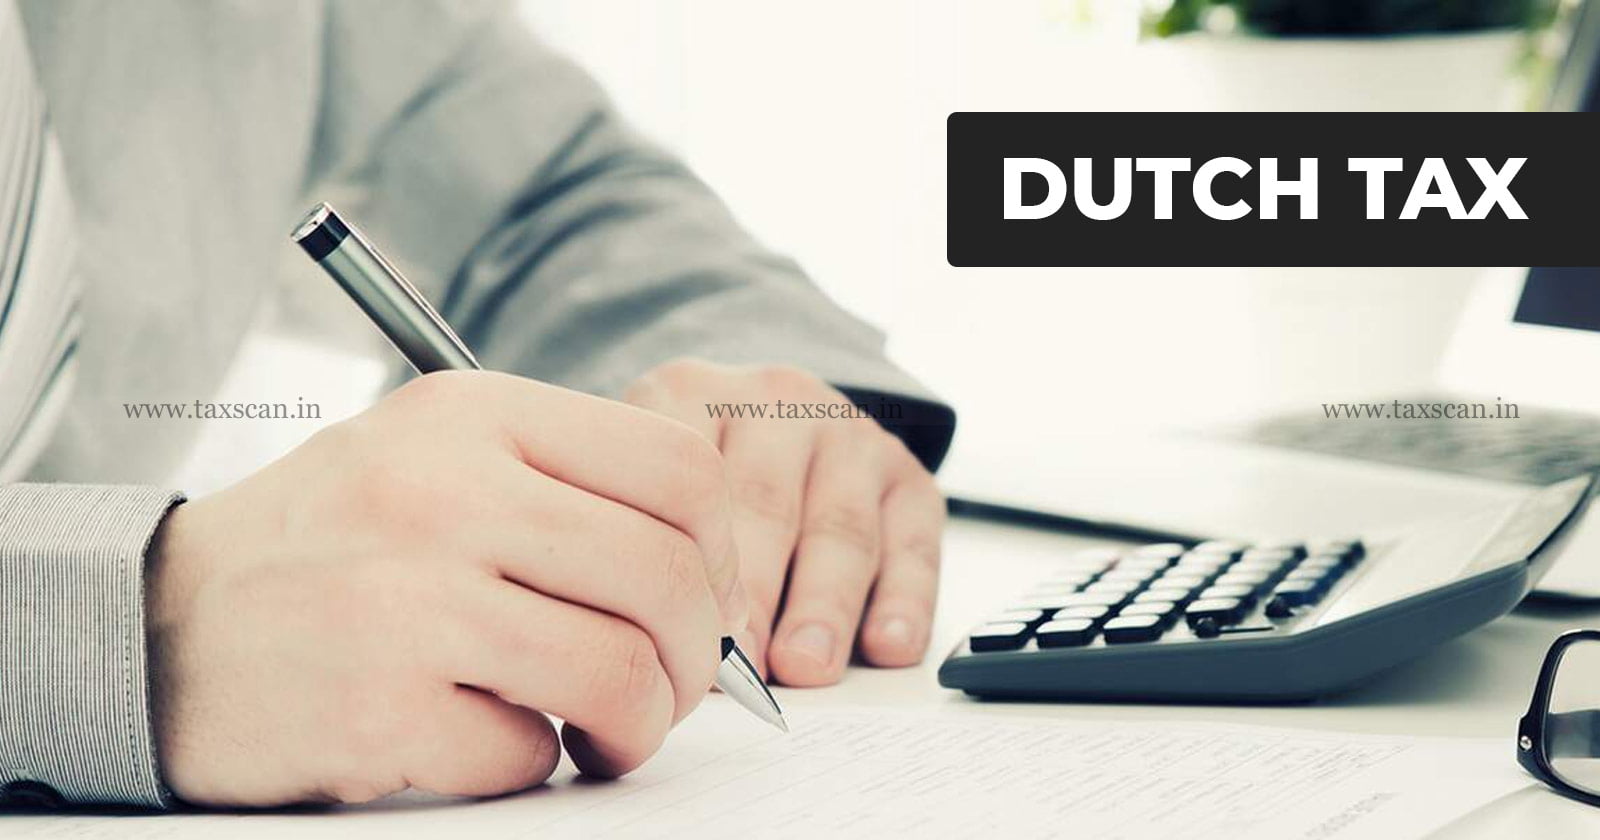 Dutch Tax - Tax - Credit - Income Tax Act - Income Tax - taxscan